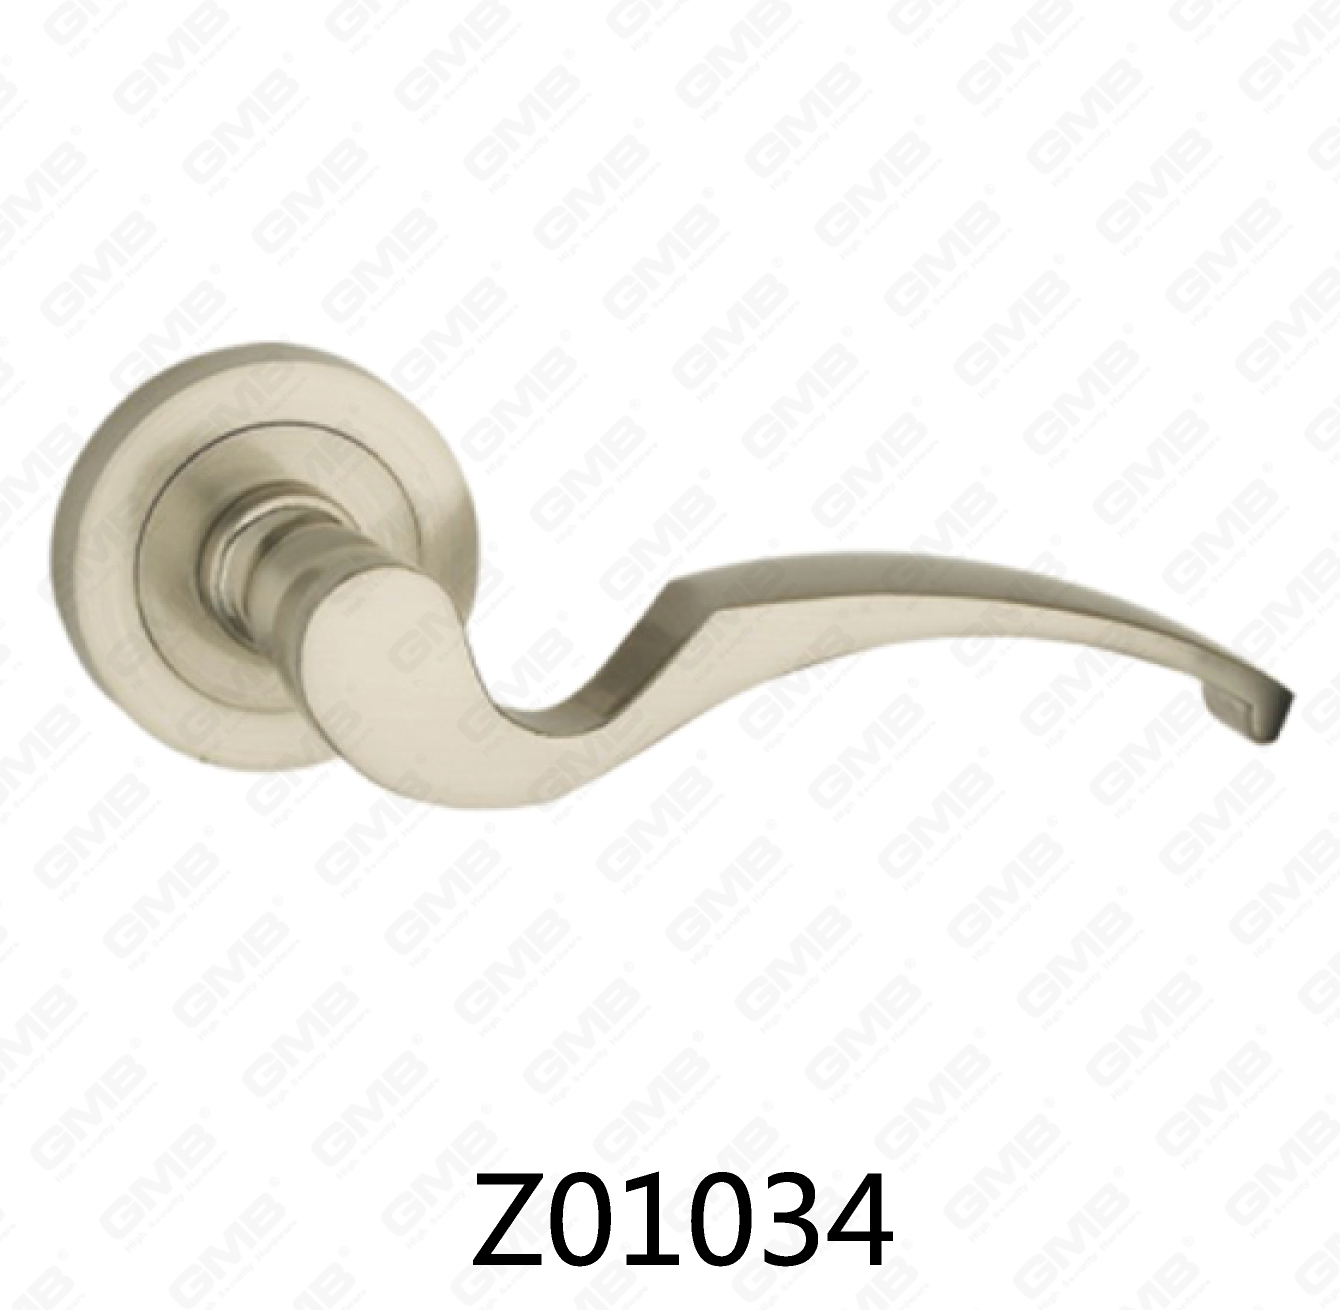 Asa de puerta de roseta de aluminio de aleación de zinc Zamak con roseta redonda (Z01034)